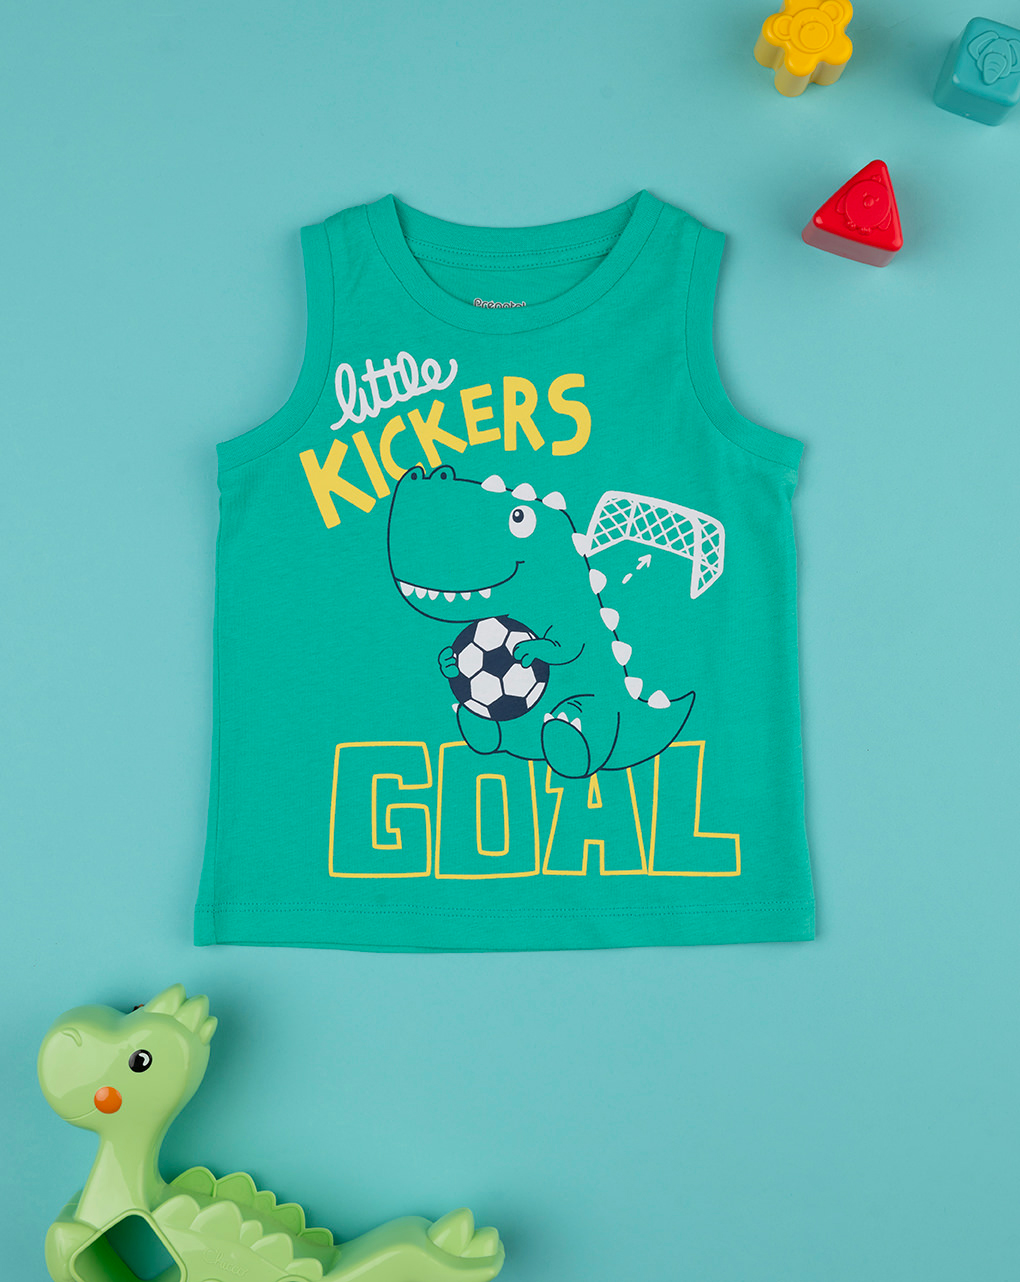 Camiseta de tirantes verde bebé - Prénatal